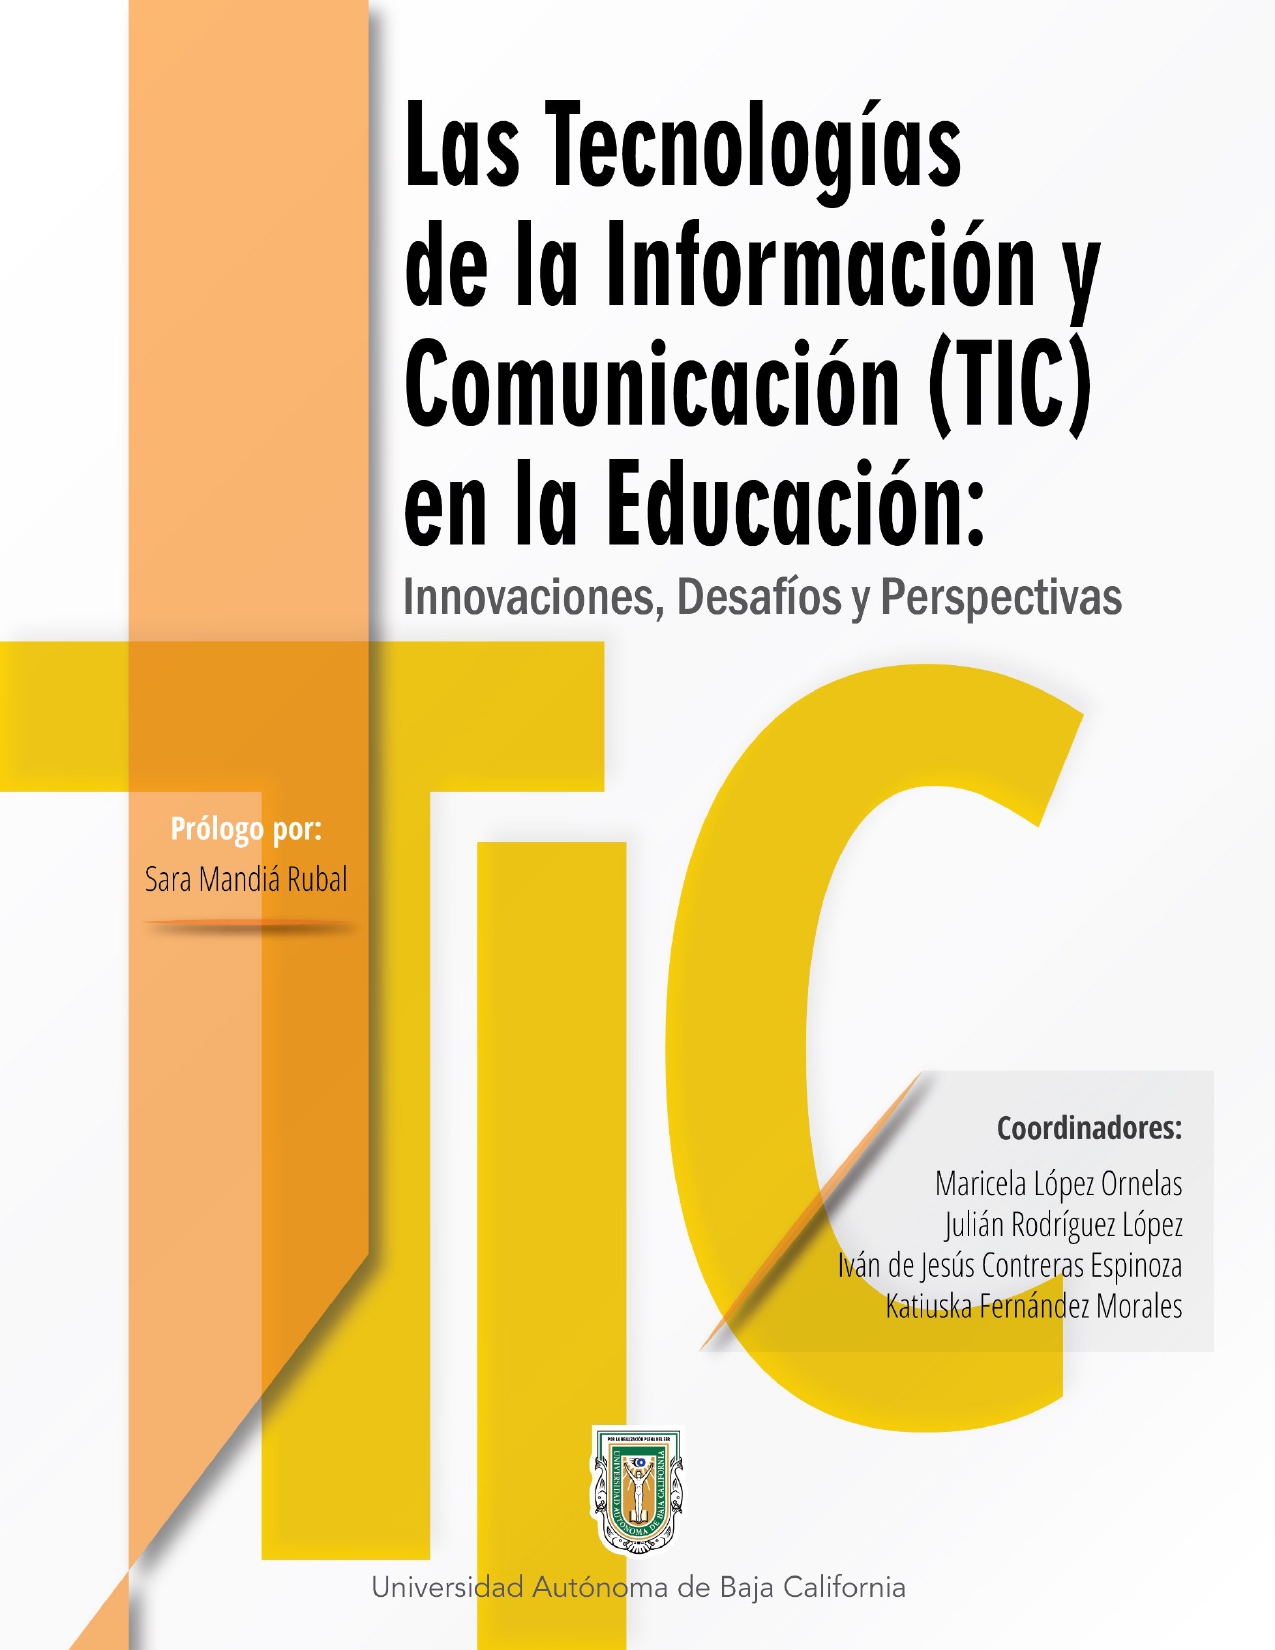 Imagen de portada del libro Las tecnologías de la información y comunicación (TIC) en la educación